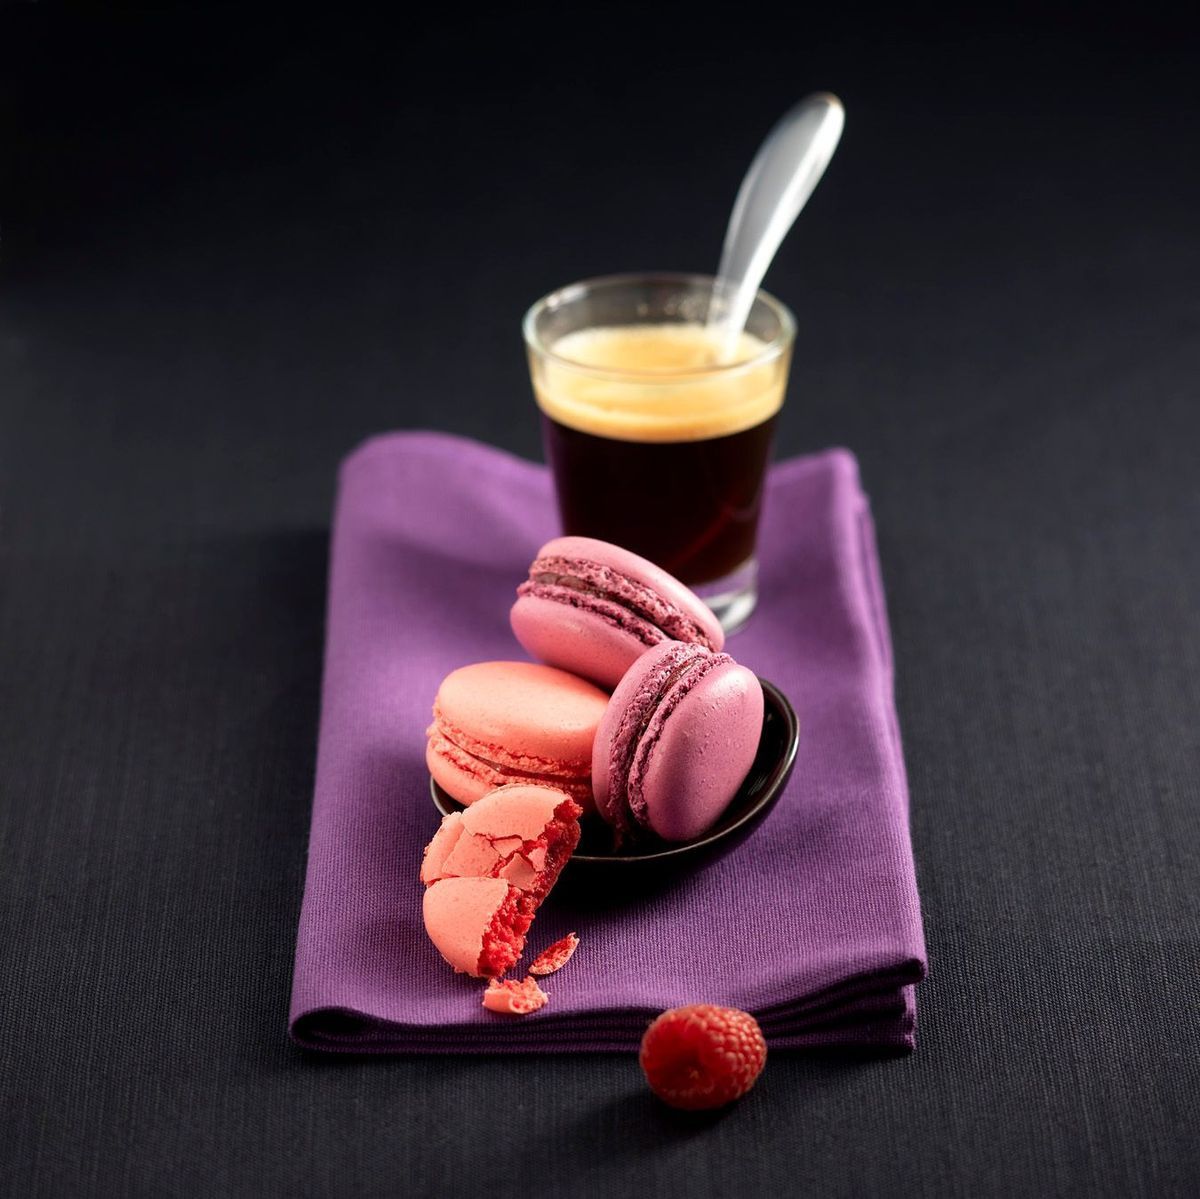 Enie backt: Rezept- Bild Erdbeer- und Himbeer-Macarons